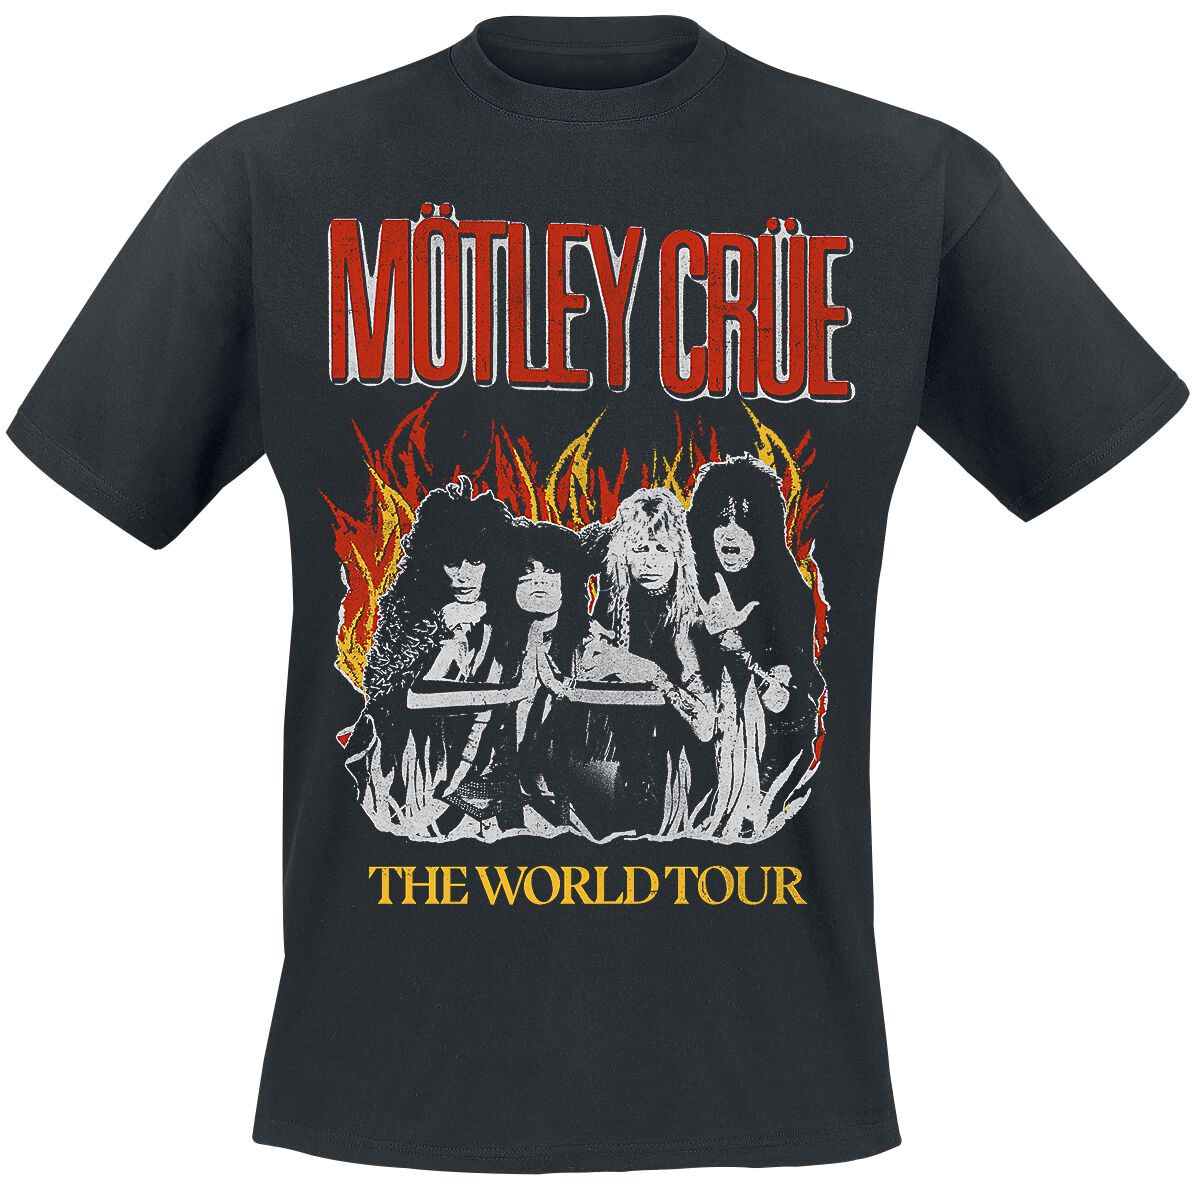 Mötley Crüe T-Shirt - Vintage World Tour Flames - M bis 4XL - für Männer - Größe XXL - schwarz  - Lizenziertes Merchandise!